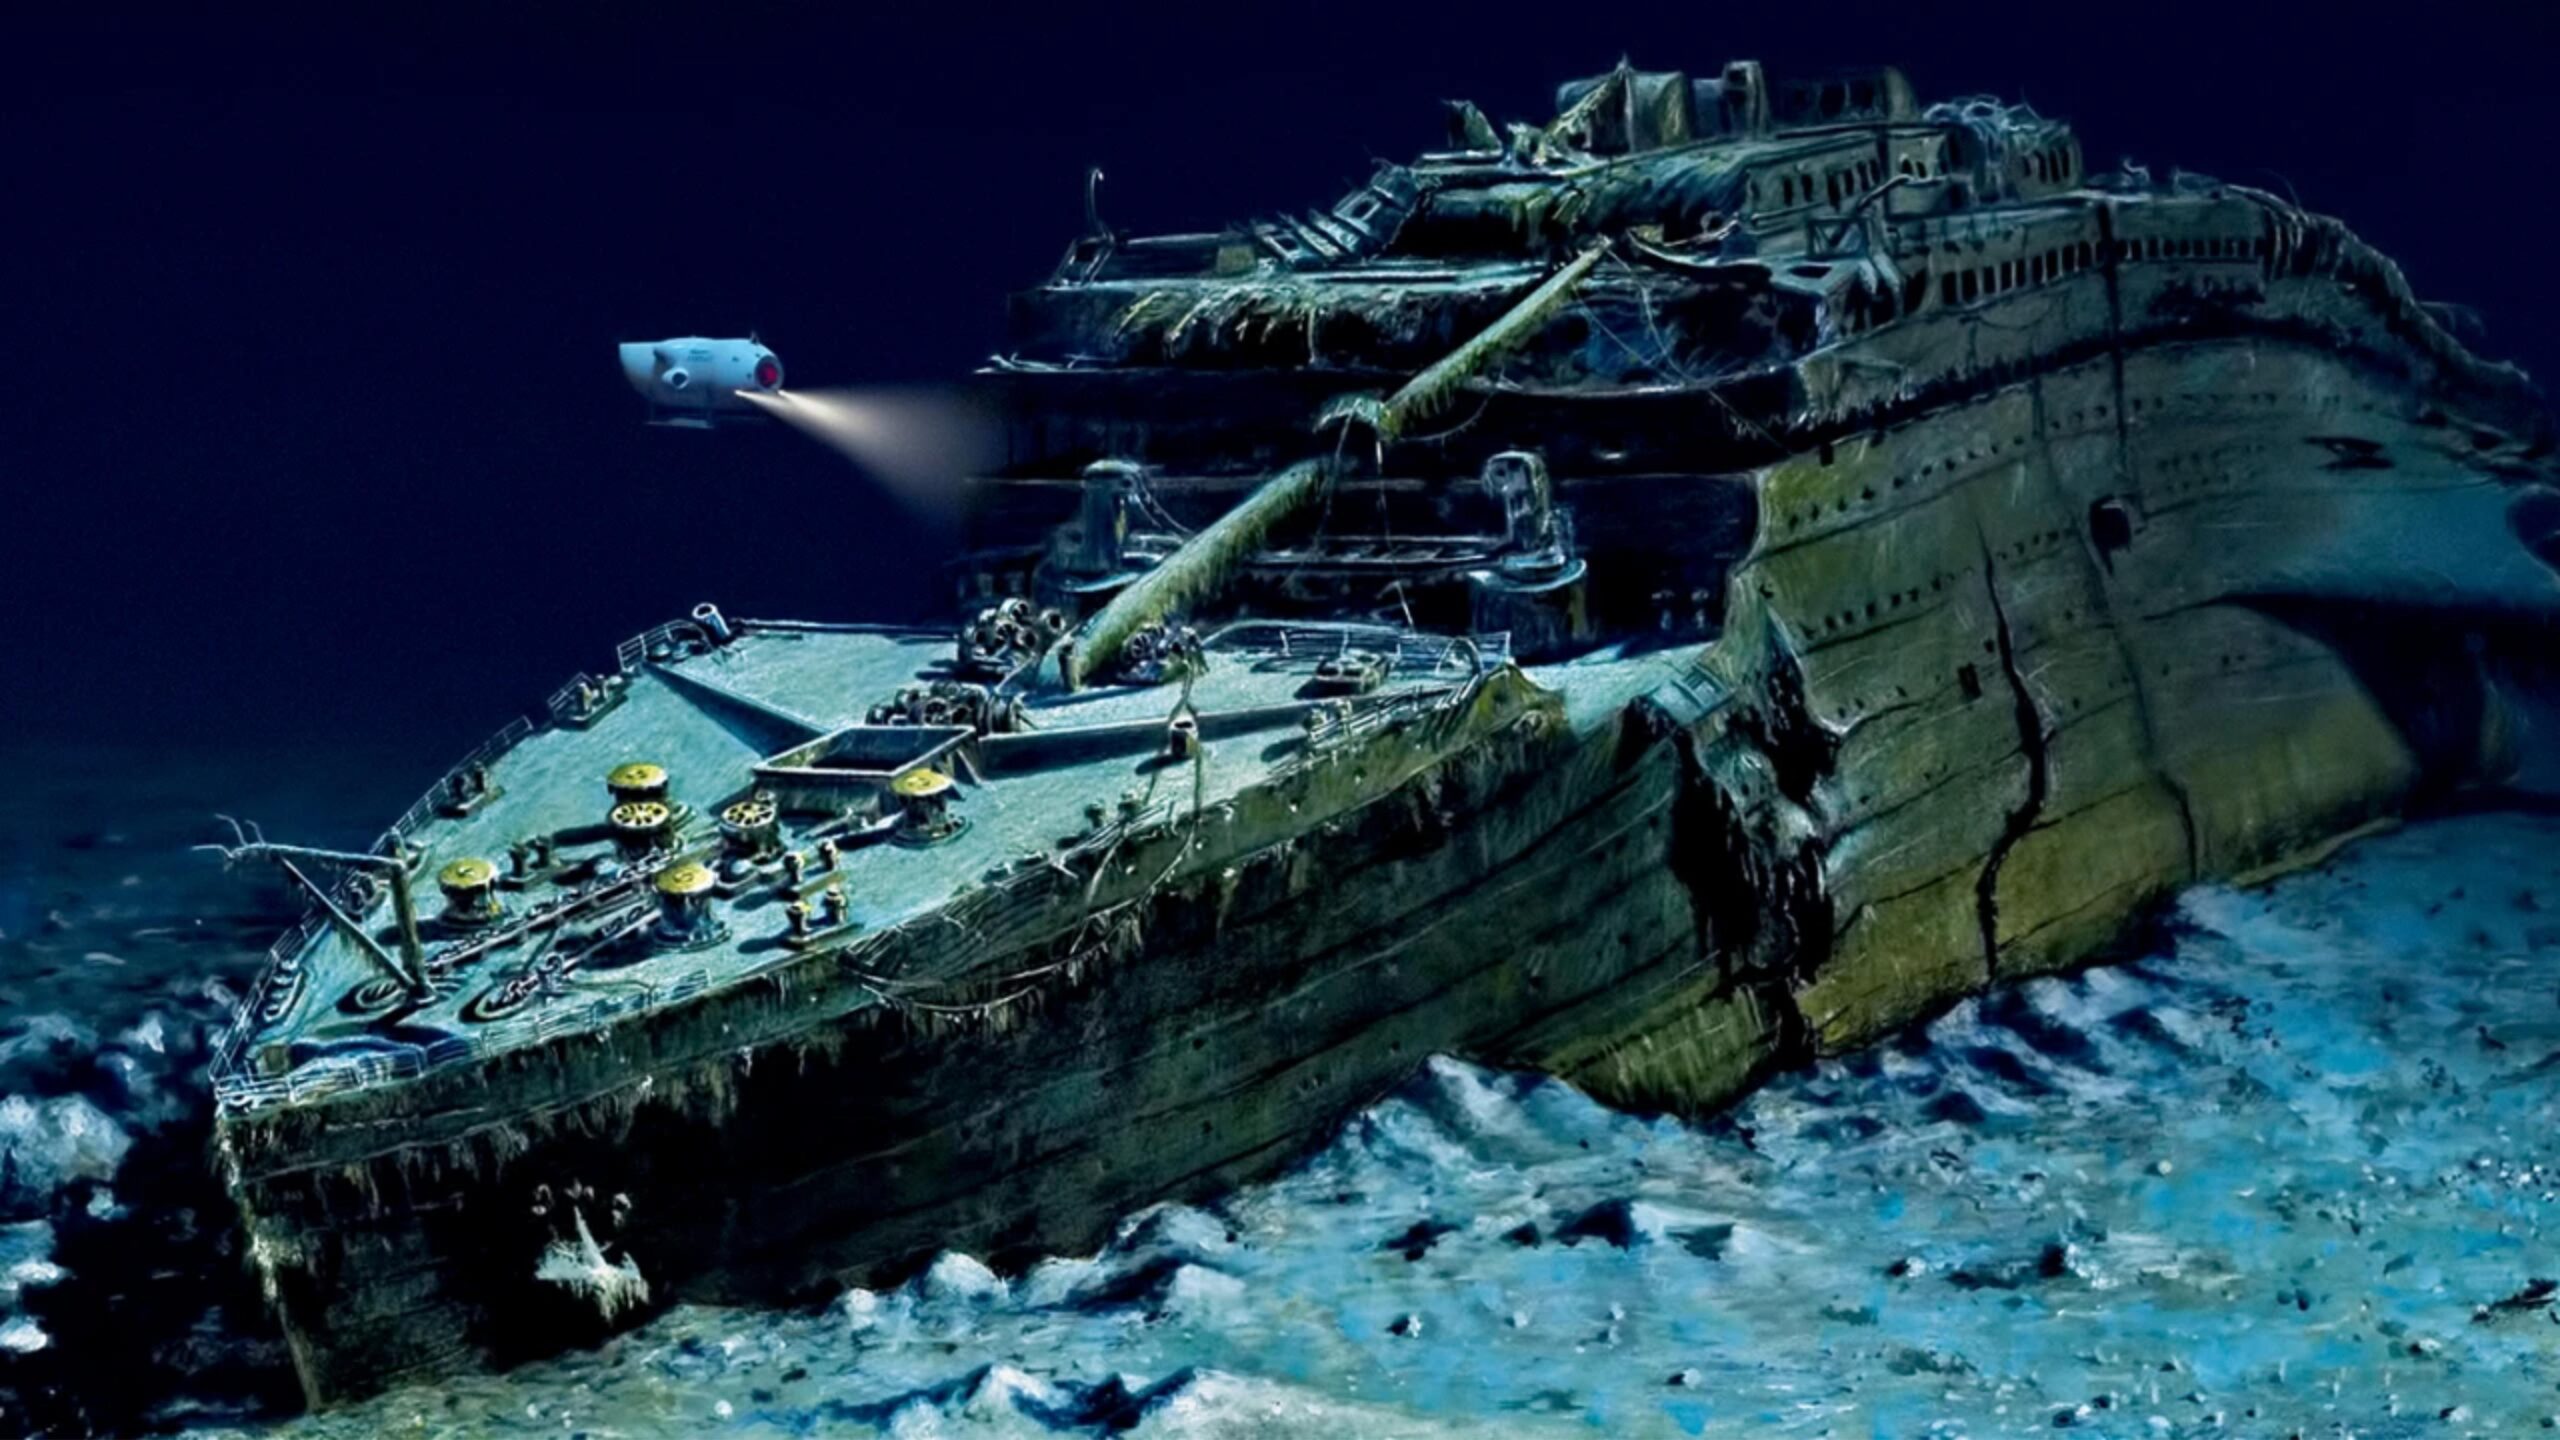 Por que o Titanic não implodiu quando afundou no mar? | Noroeste 360